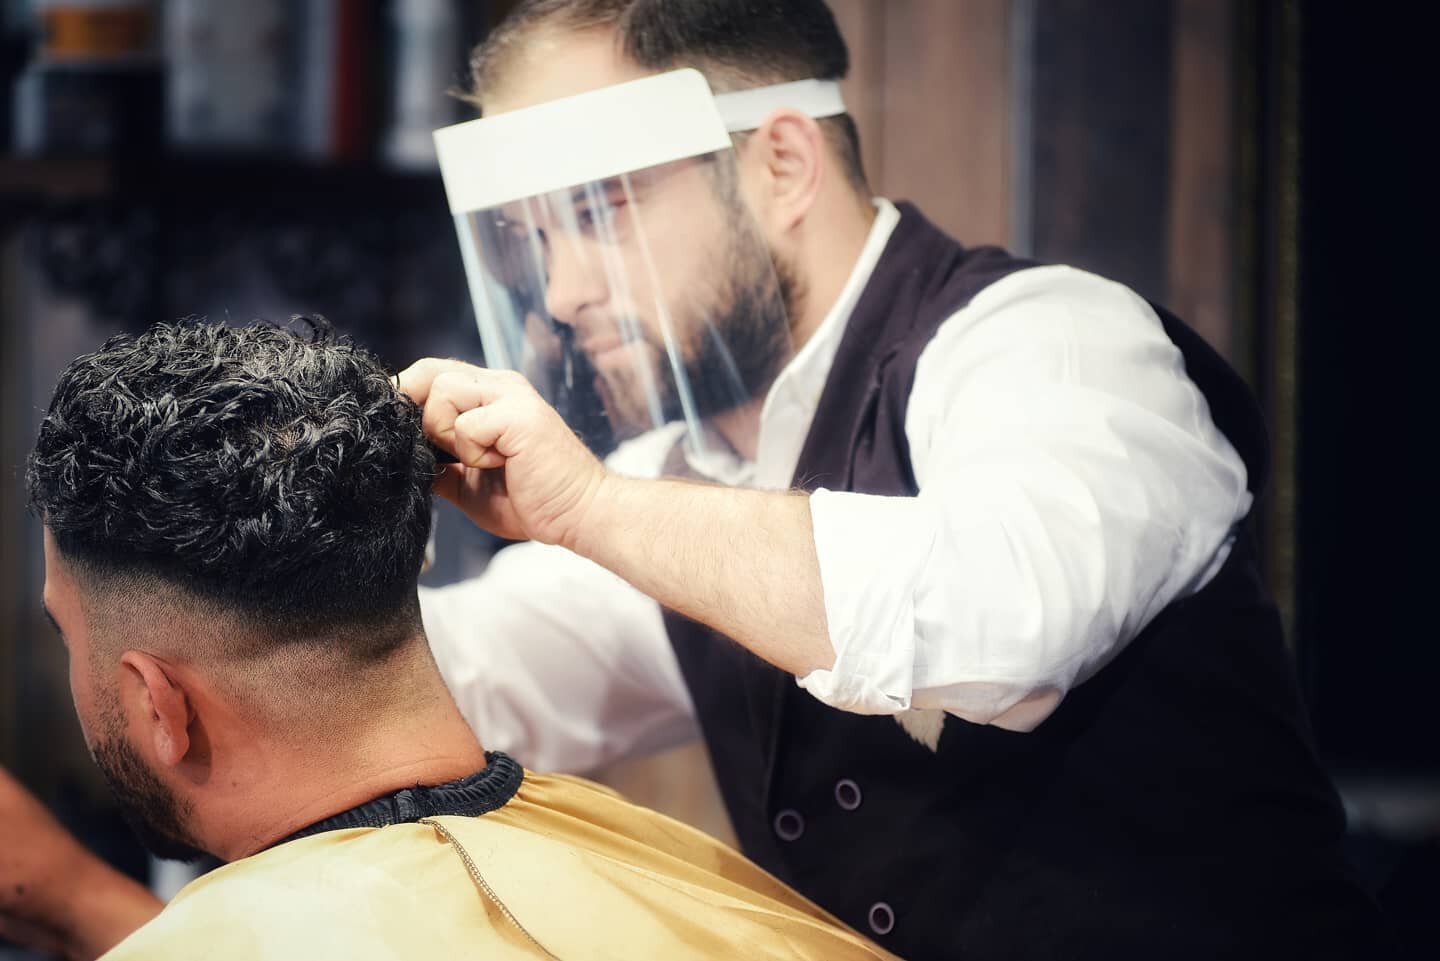 #tonsorialparlor #arundel #westsussex #bestbarbershop #hair #male #maletrends #barbering #barberlife #fadegame #luxury #style #hairtrends #grooming #internationalbarbers #behindthechair #menshair #scissors #menshaircut  #barber #haircut #menstyle #me